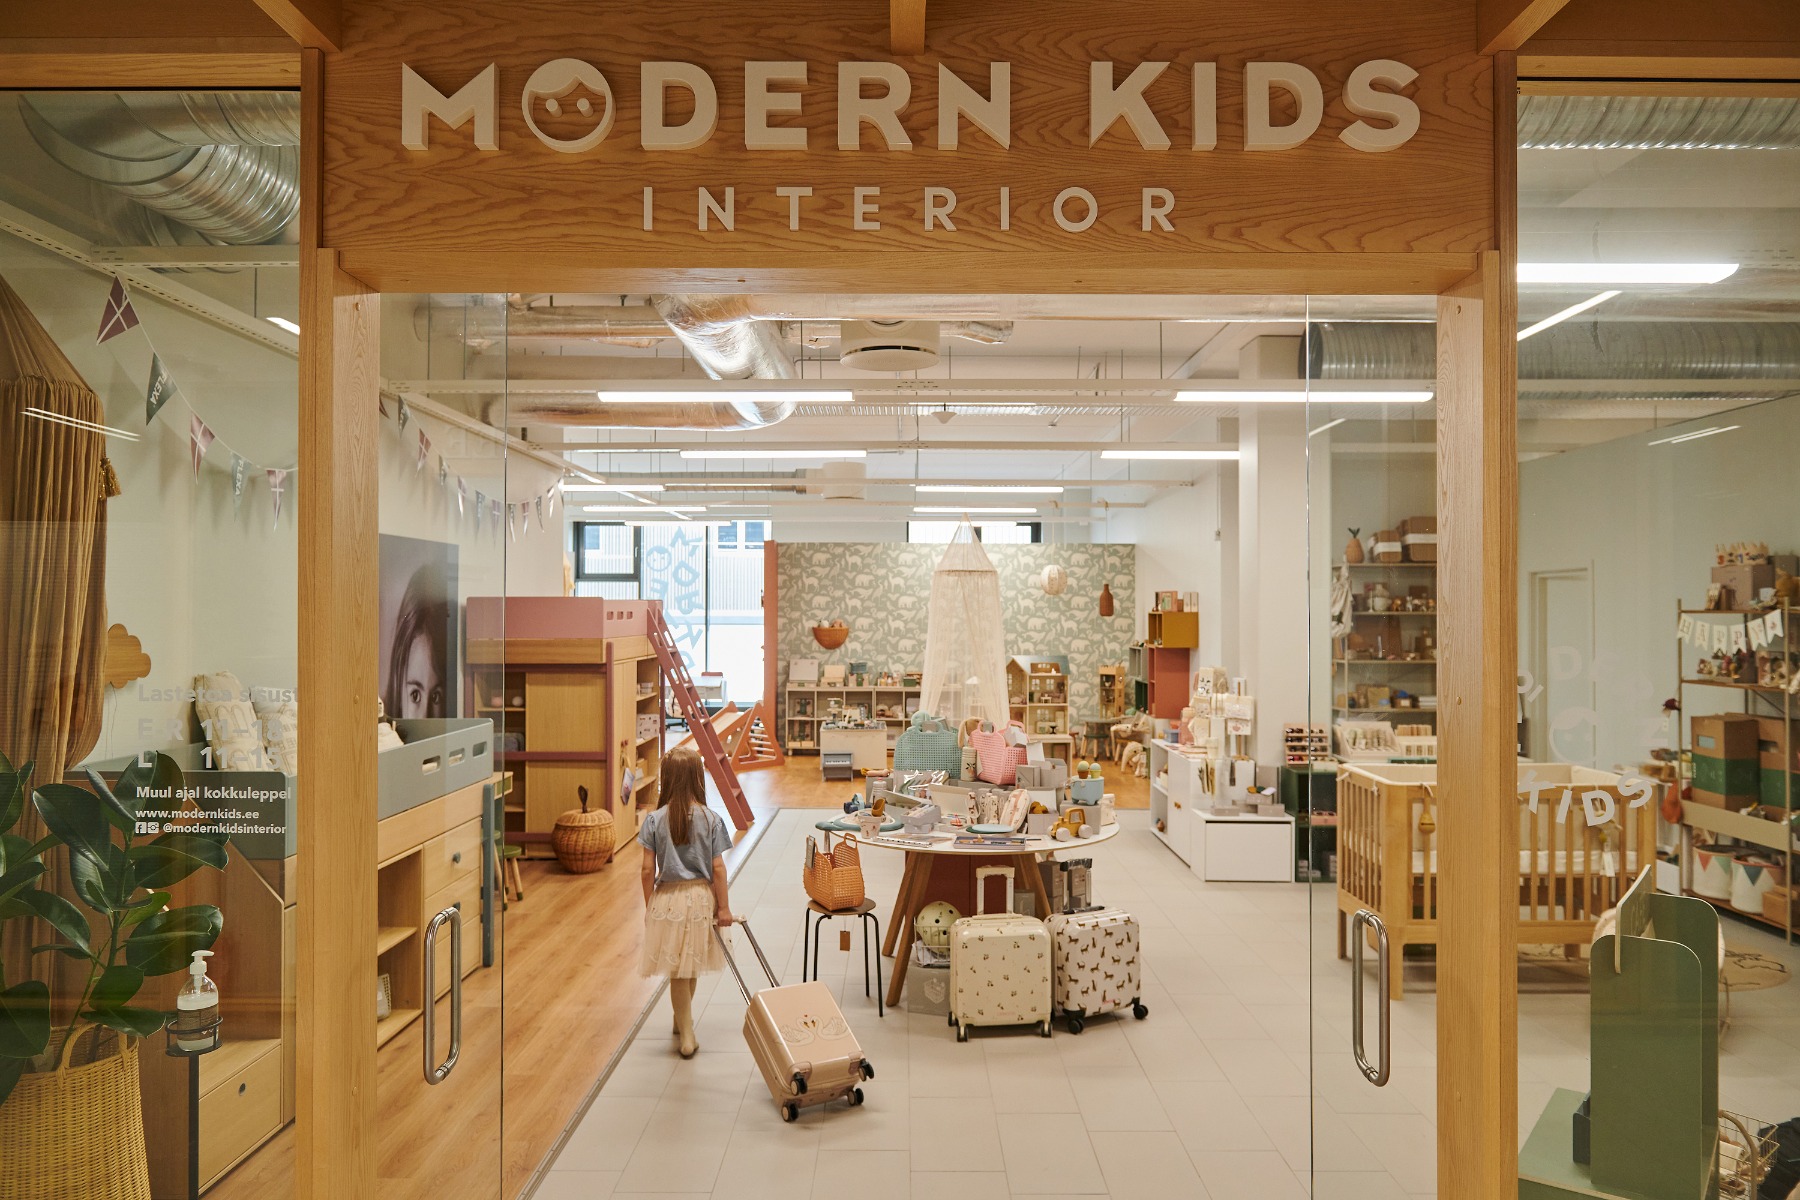 Modern Kids Interior